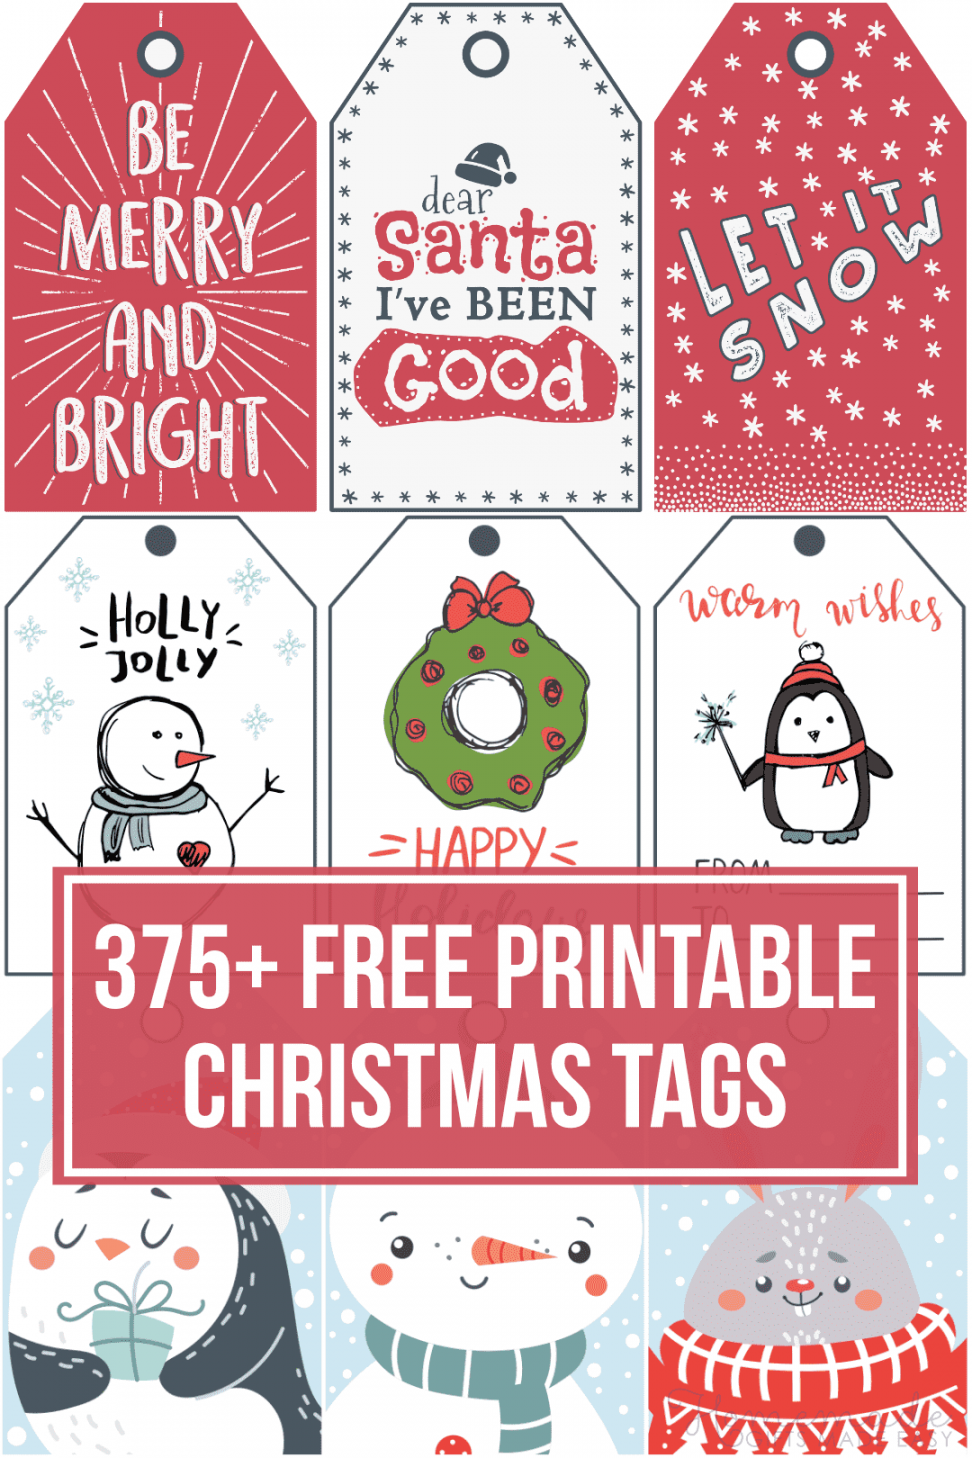 Christmas Tags Free Printable - Printable - + Free Printable Christmas Tags for your Holiday Gifts